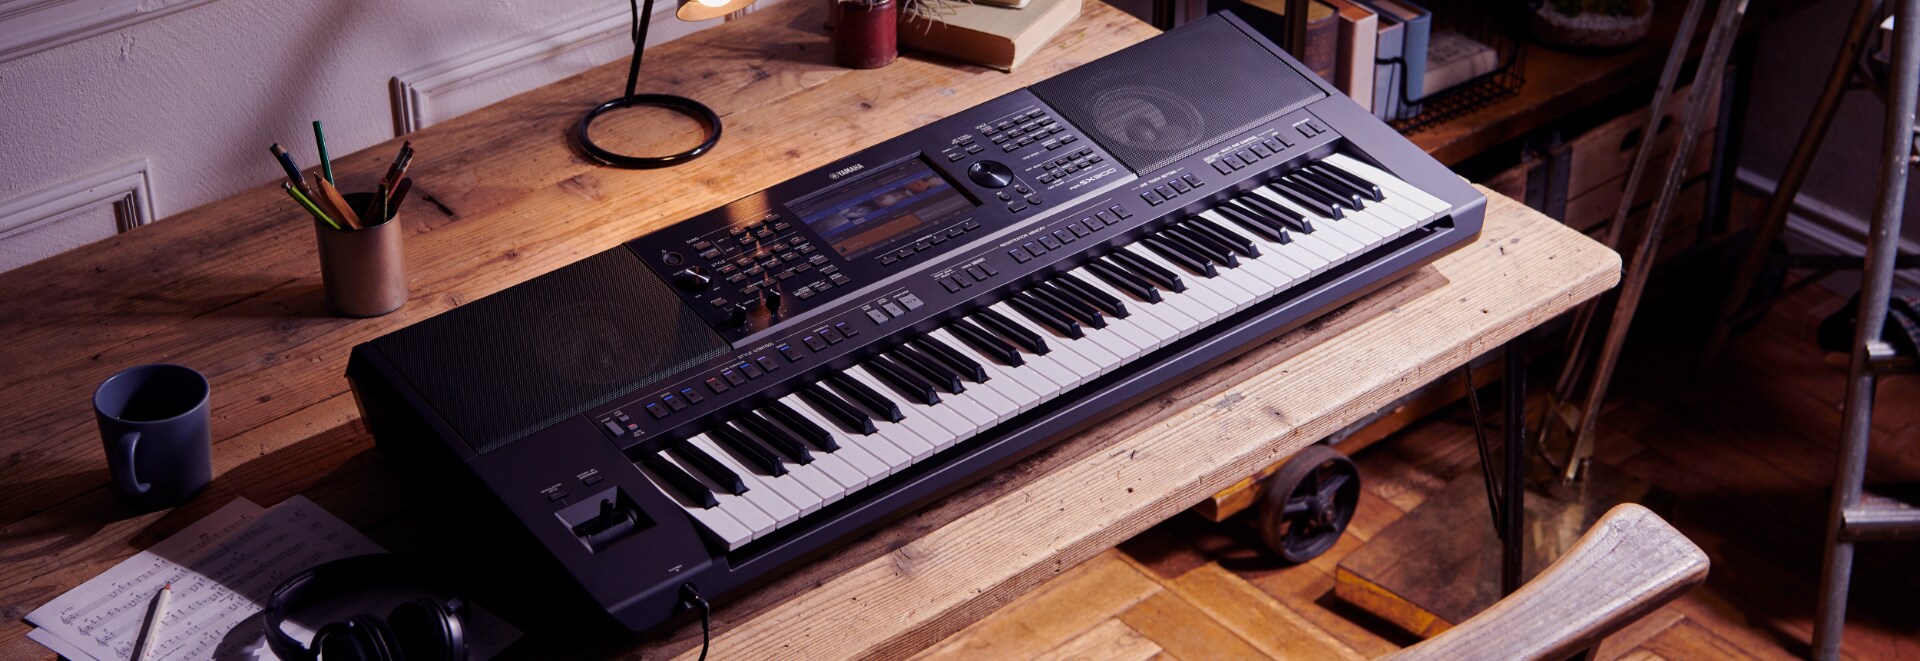 Yamaha PSR-SX600 Arranger Keyboard